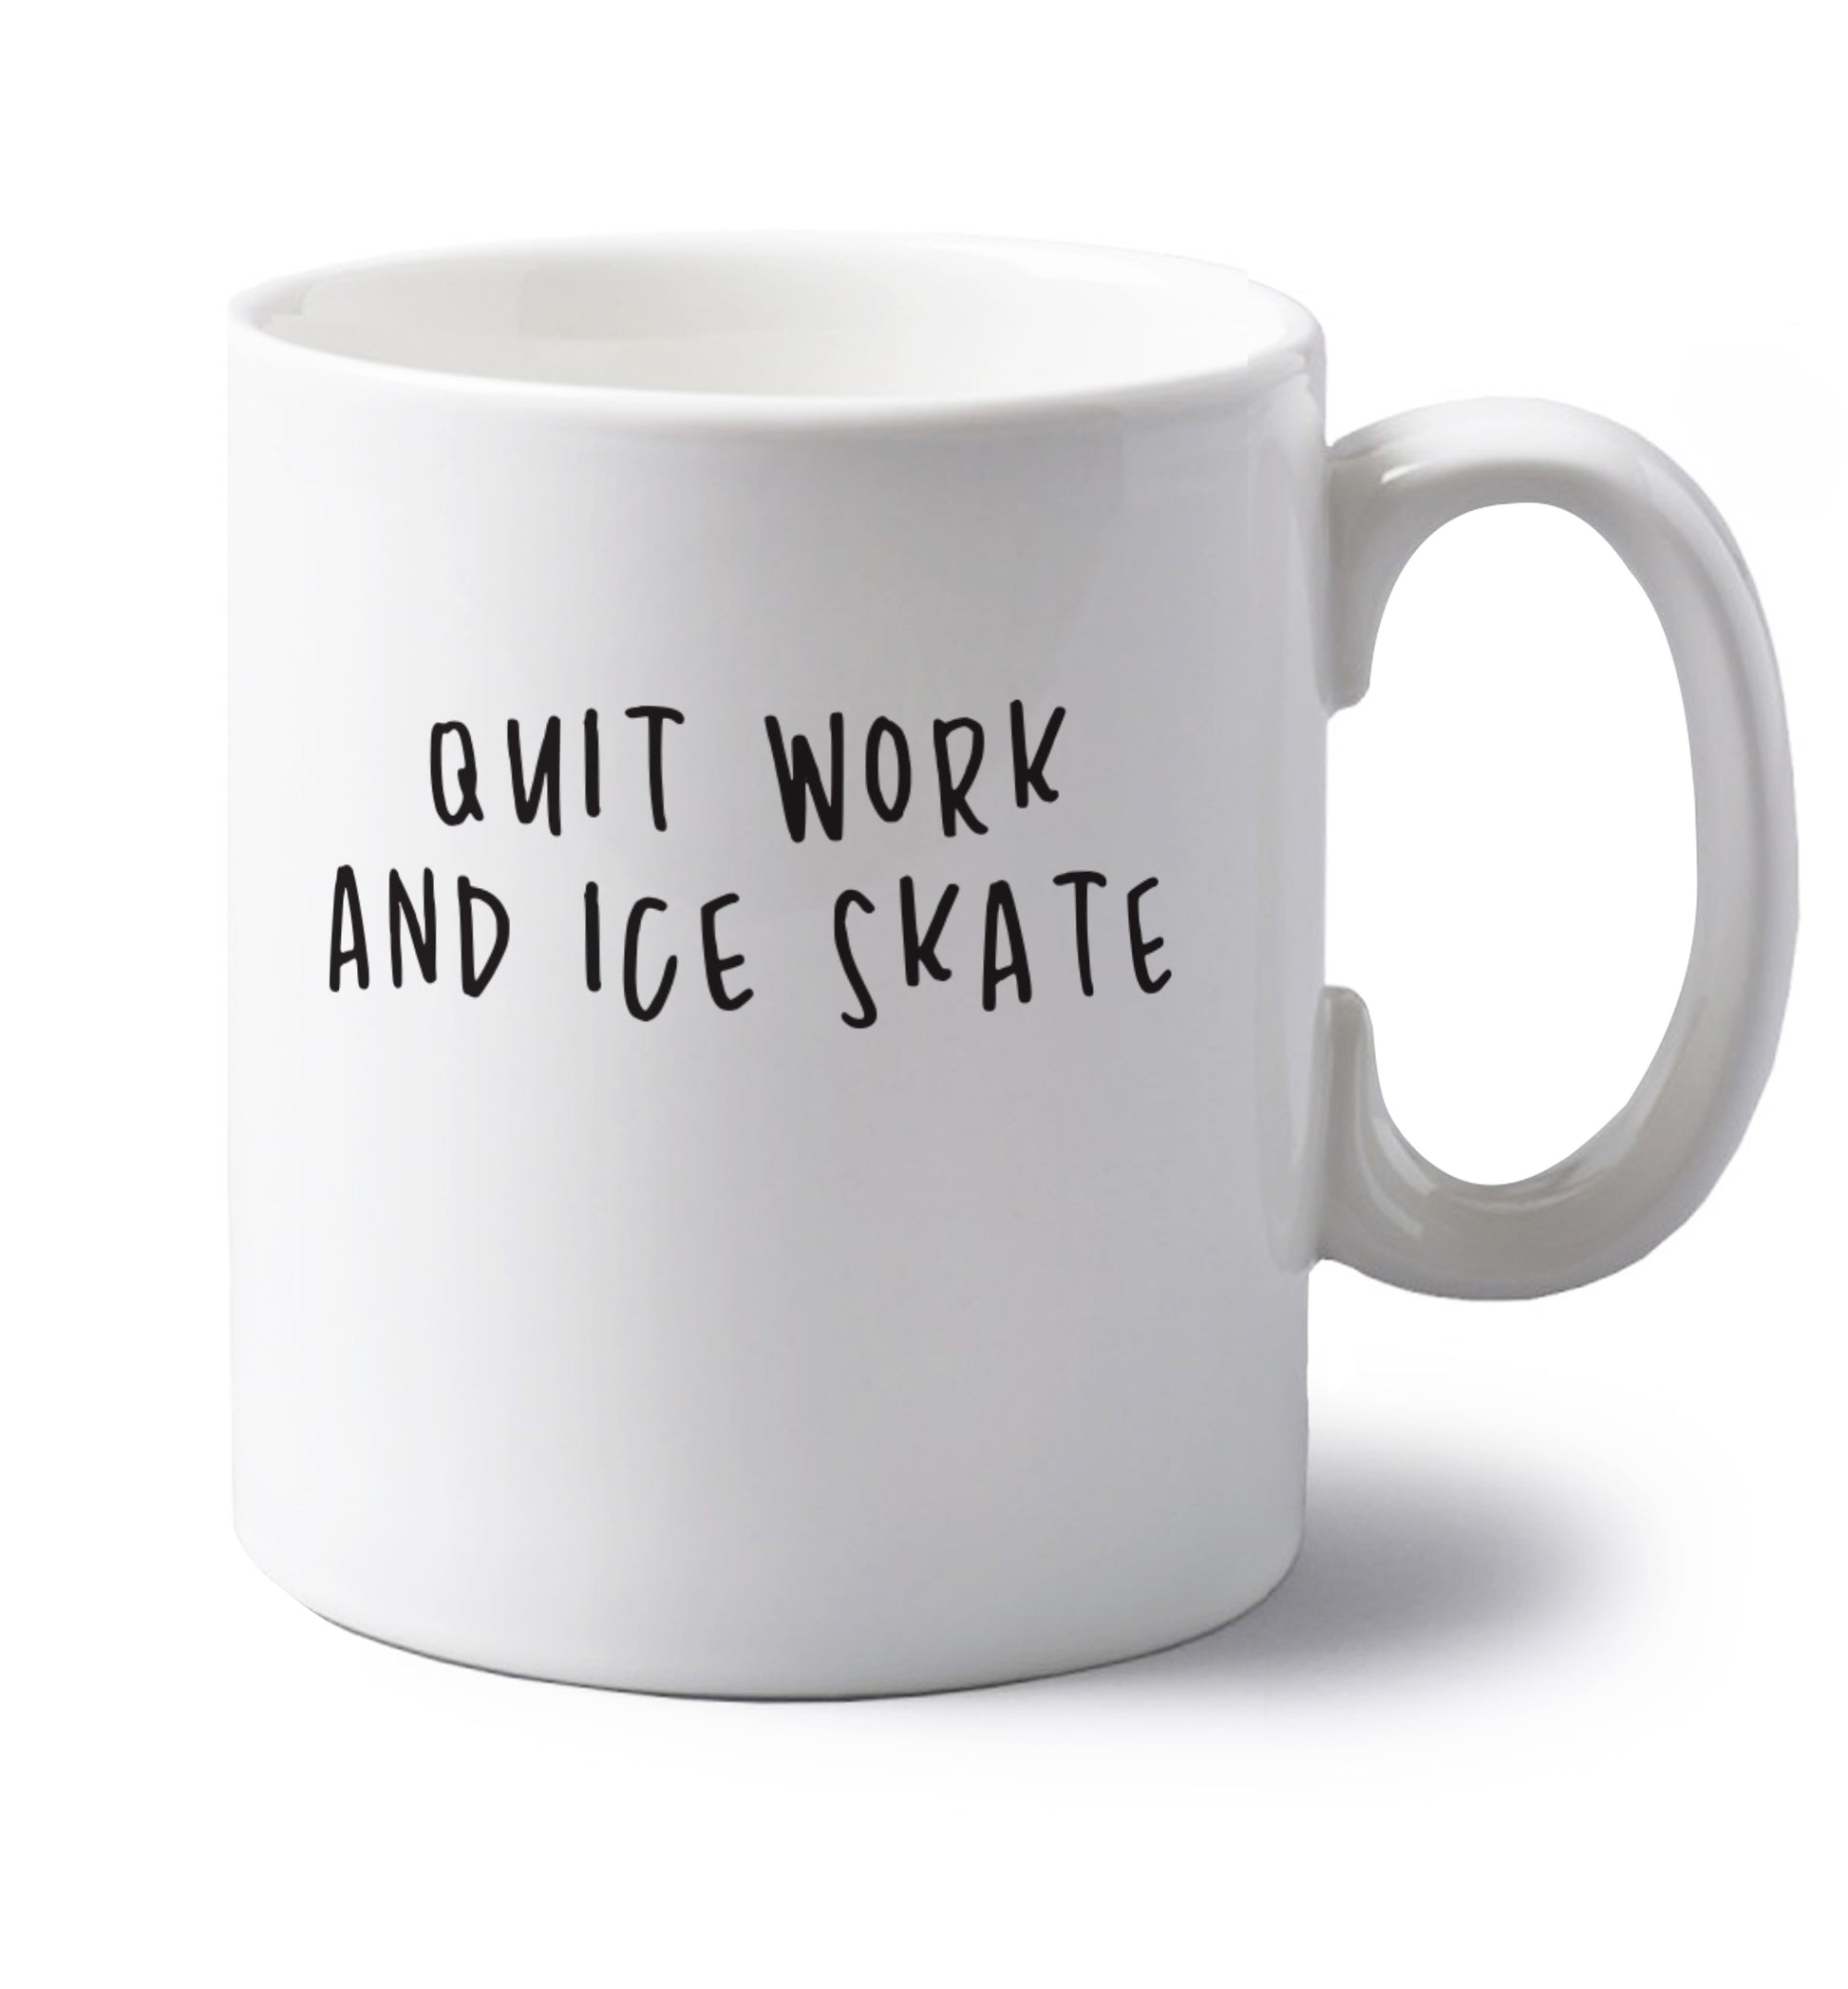 Quit work ice skate left handed white ceramic mug 